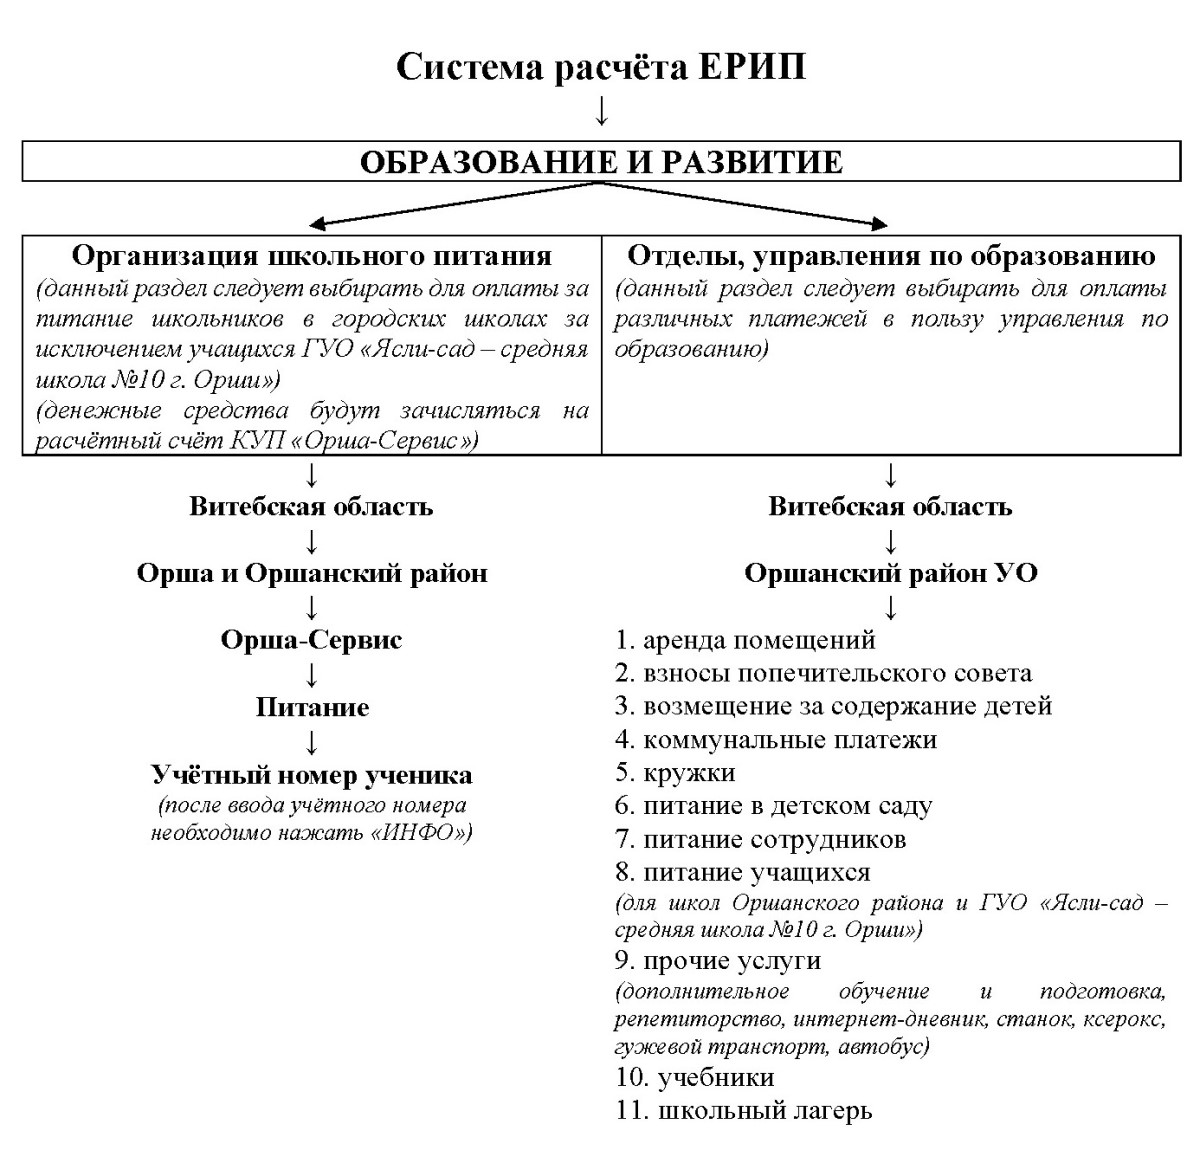 Инструкция по платежам в системе ЕРИП Оршанский район